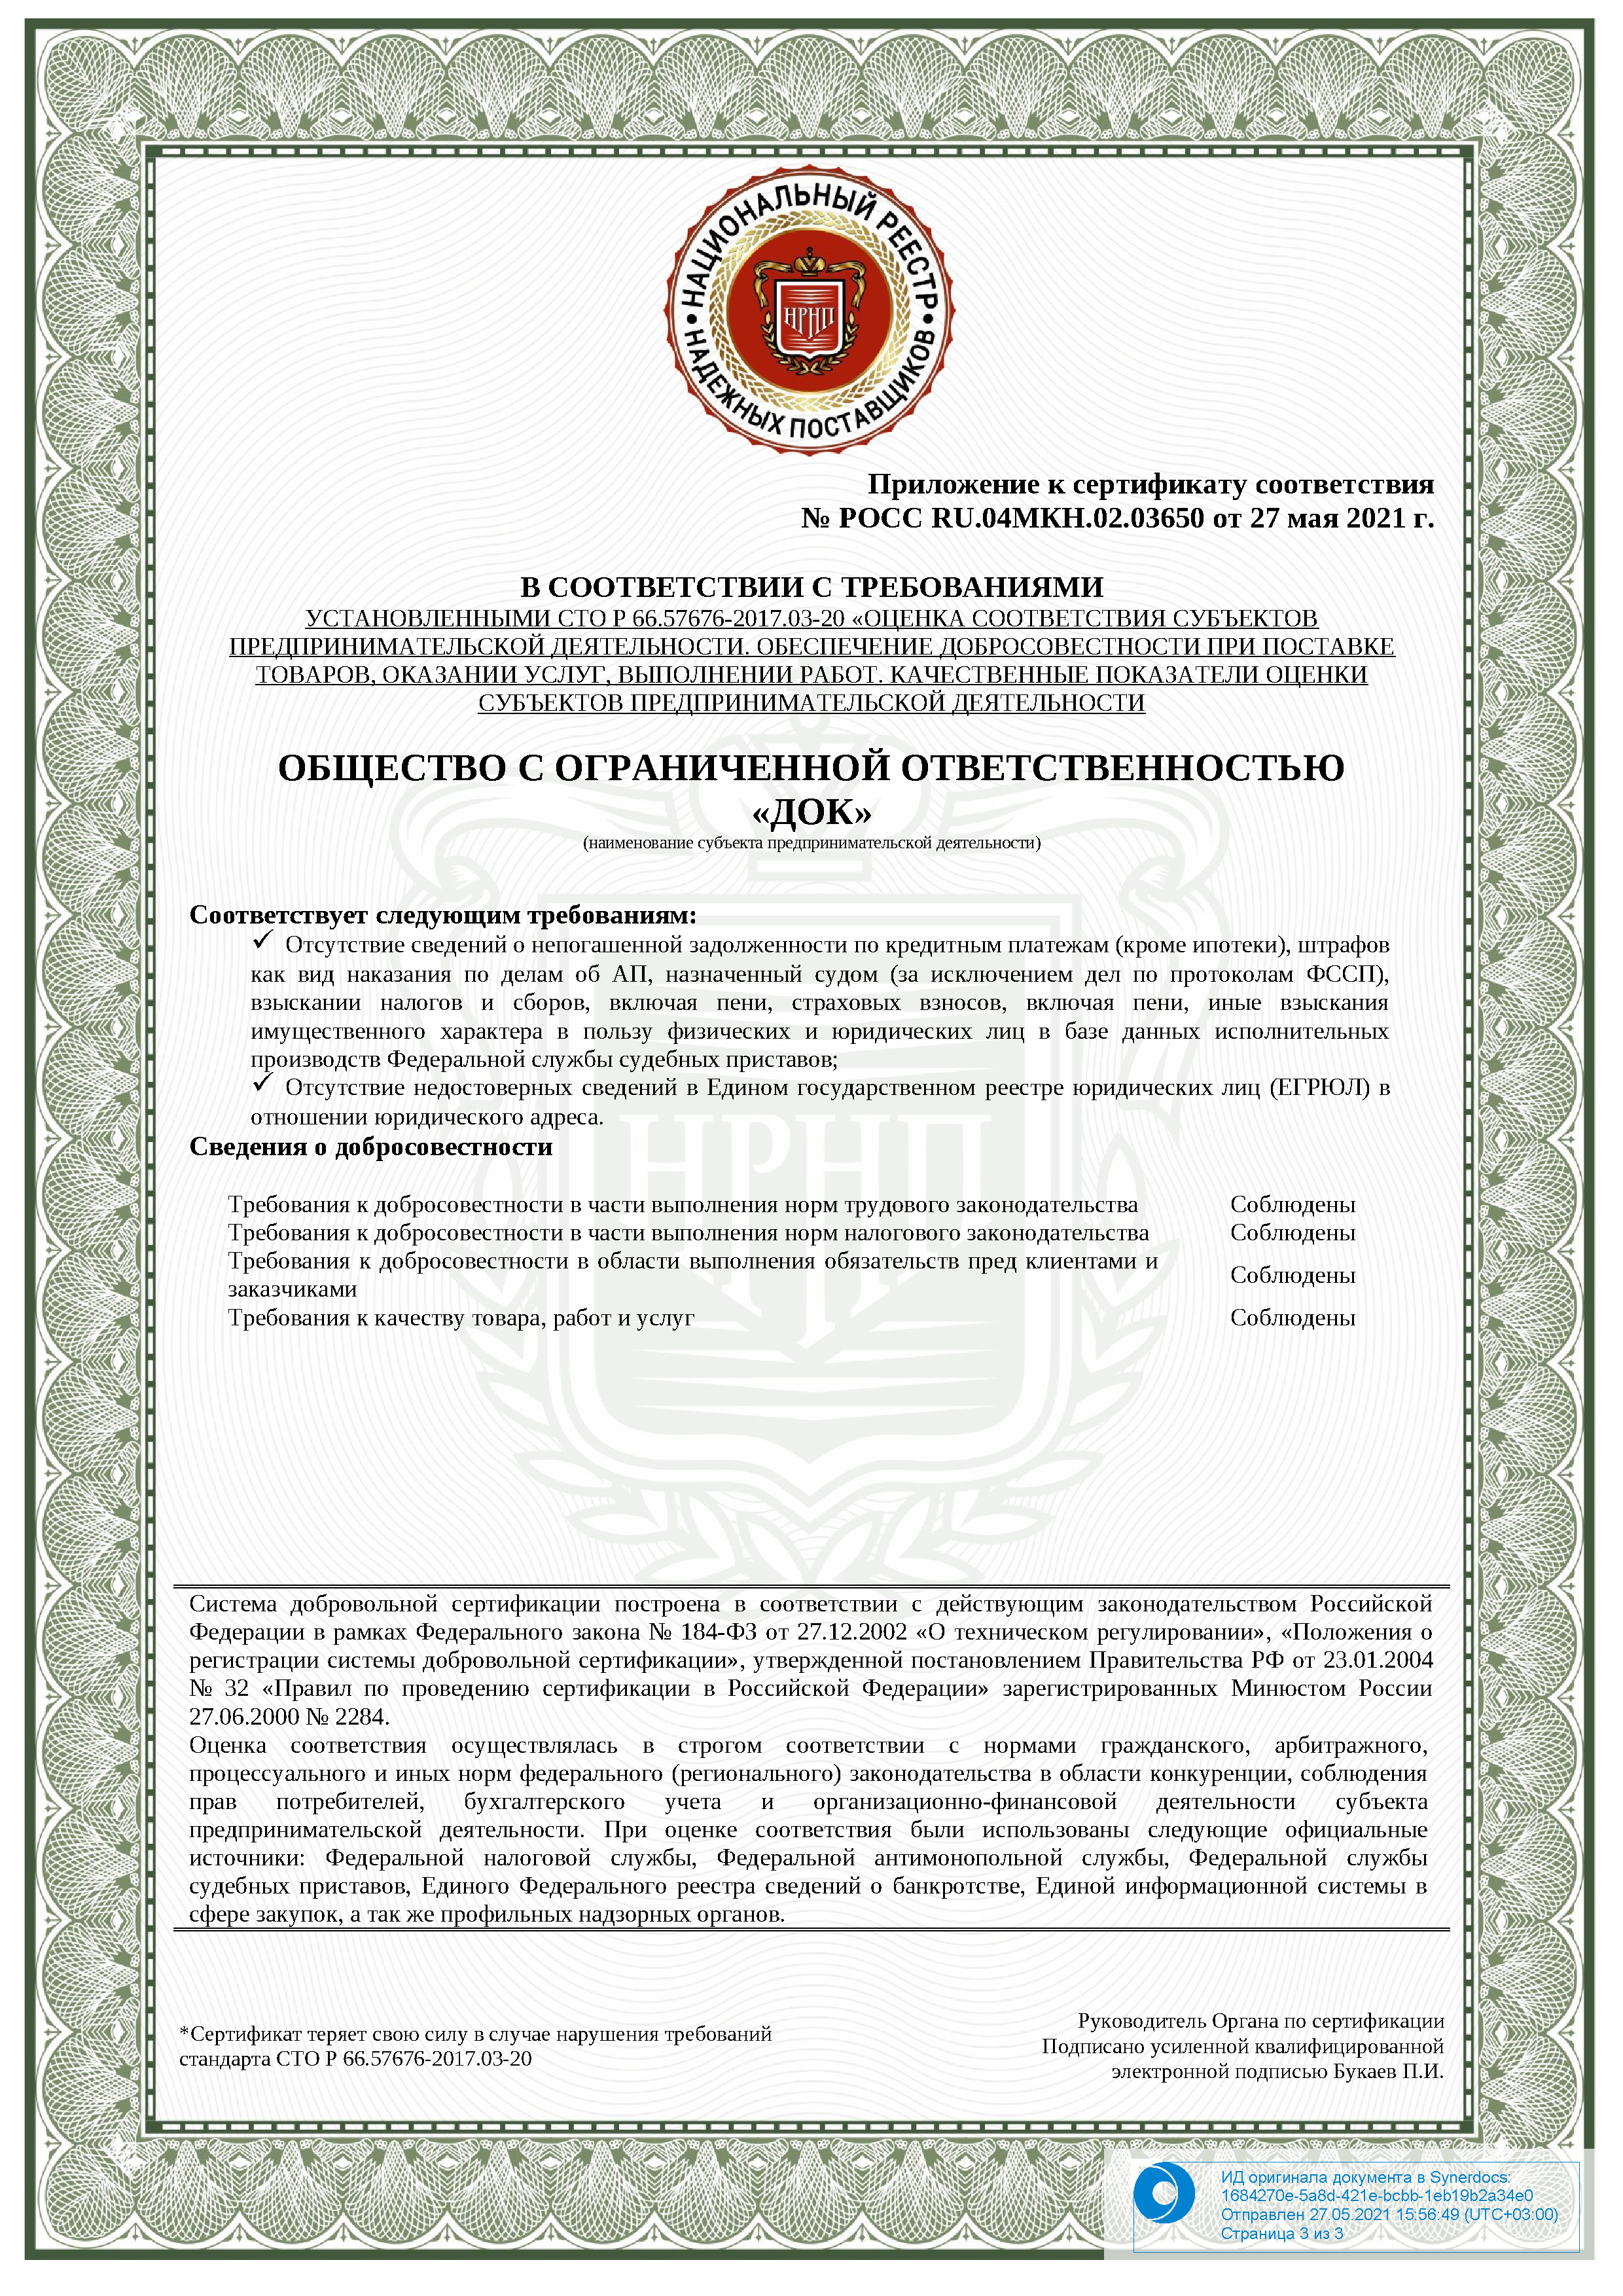 Печатная форма документа РОСС.RU.И2257.03650 Сертификат соответствия